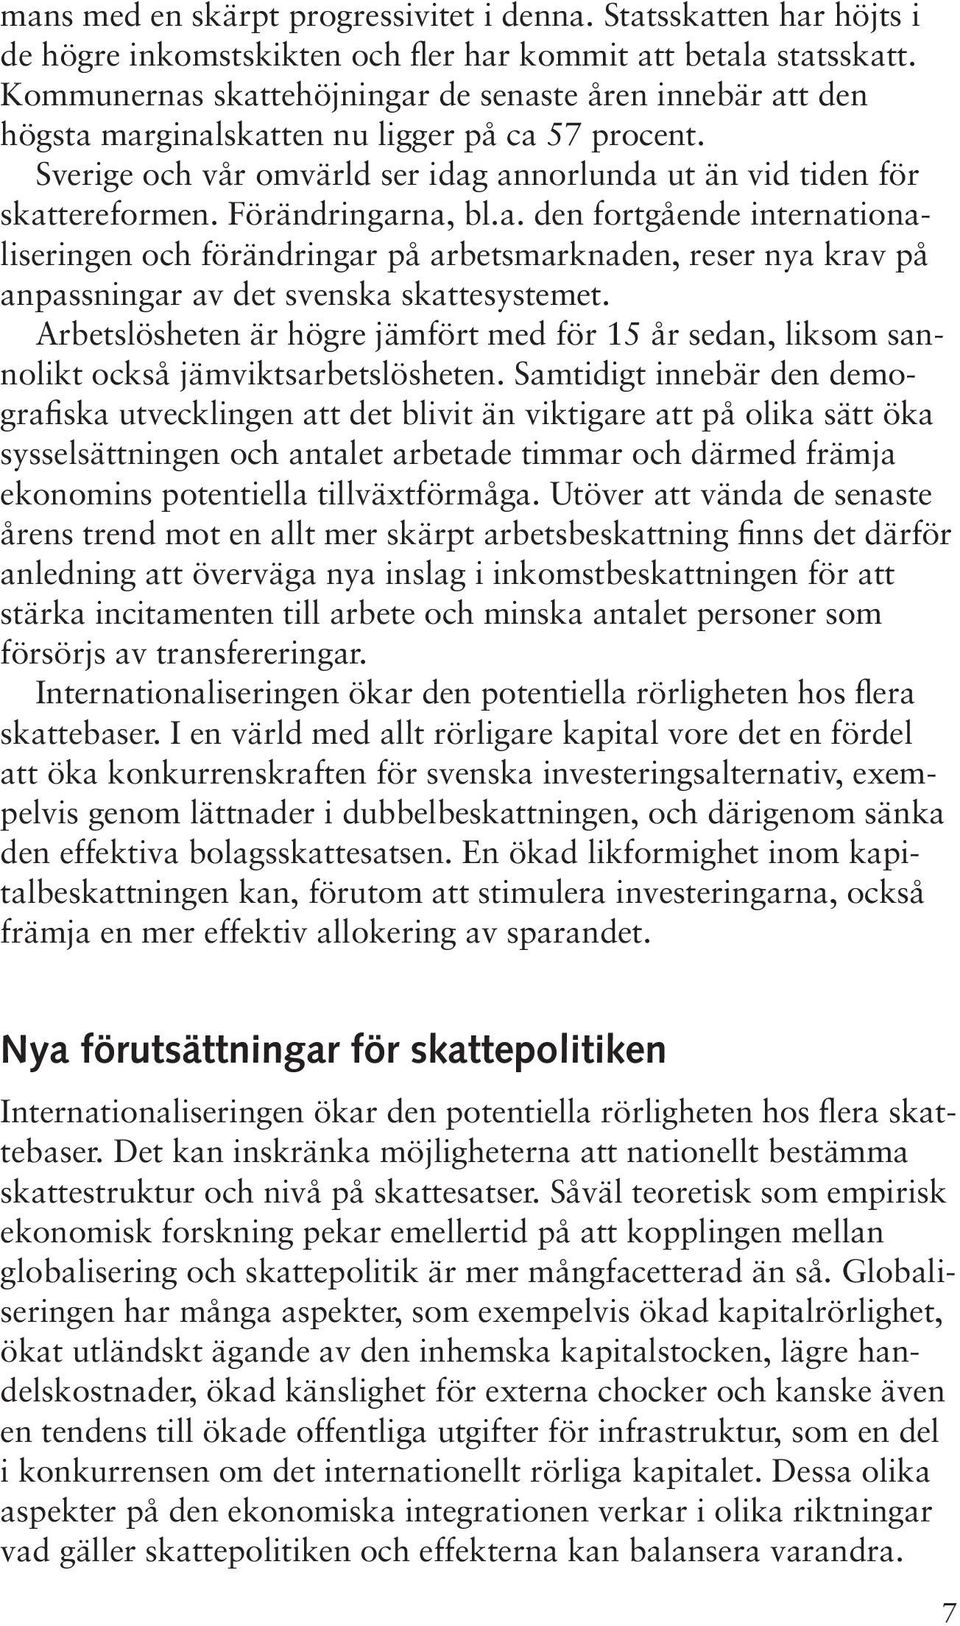 Förändringarna, bl.a. den fortgående internationaliseringen och förändringar på arbetsmarknaden, reser nya krav på anpassningar av det svenska skattesystemet.